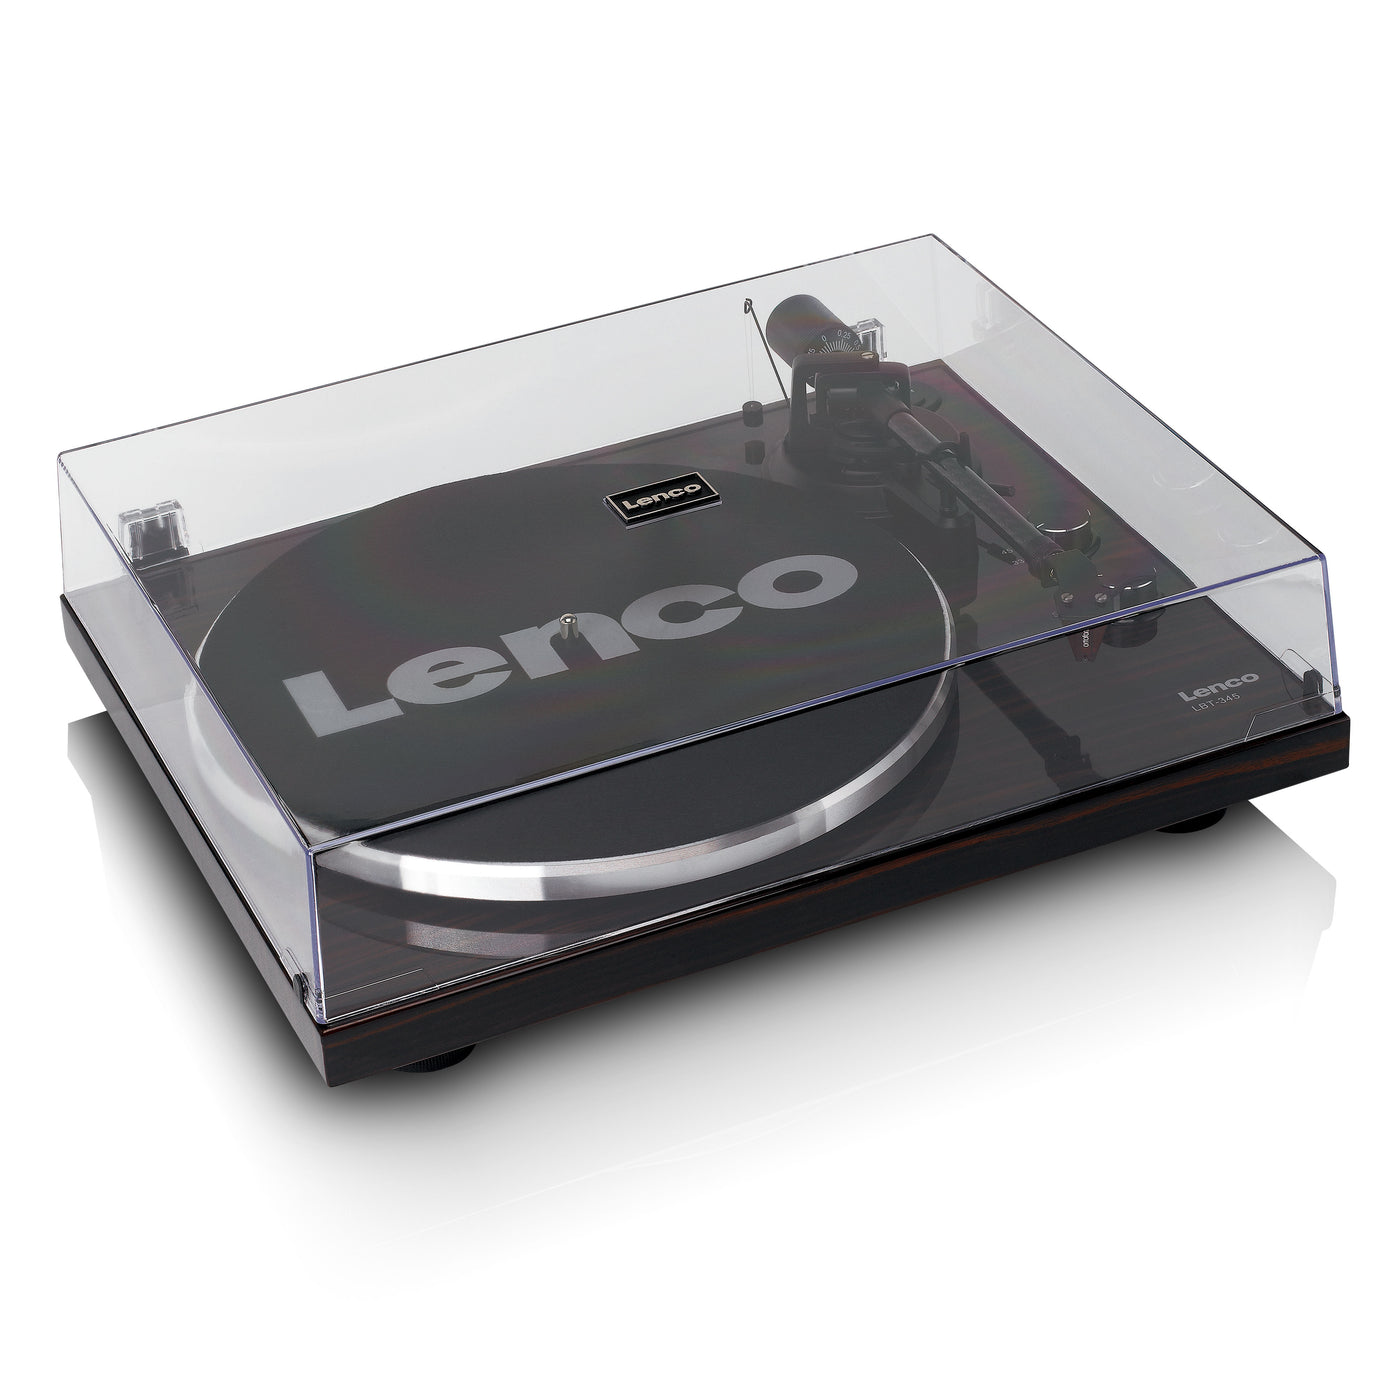 LENCO LBT-345WA - Platenspeler met Bluetooth® en Ortofon 2M Red cartridge, inclusief verchroomde platenstabilisator - Walnoot